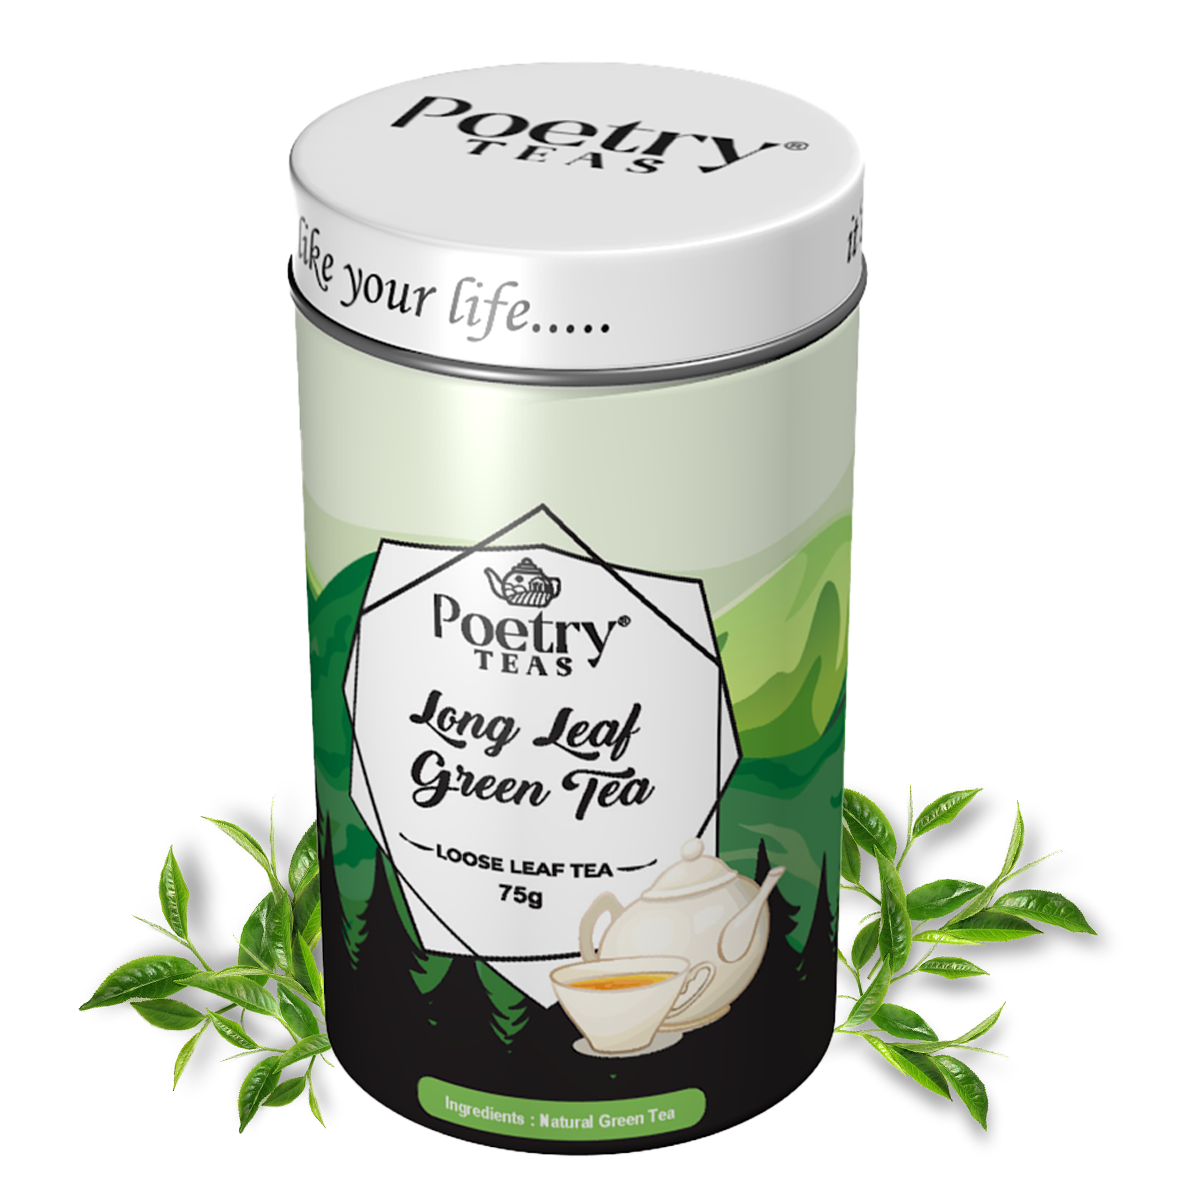 Poetry Long Leaf Green Tea - loose Leaf 75g - hfnl!fe